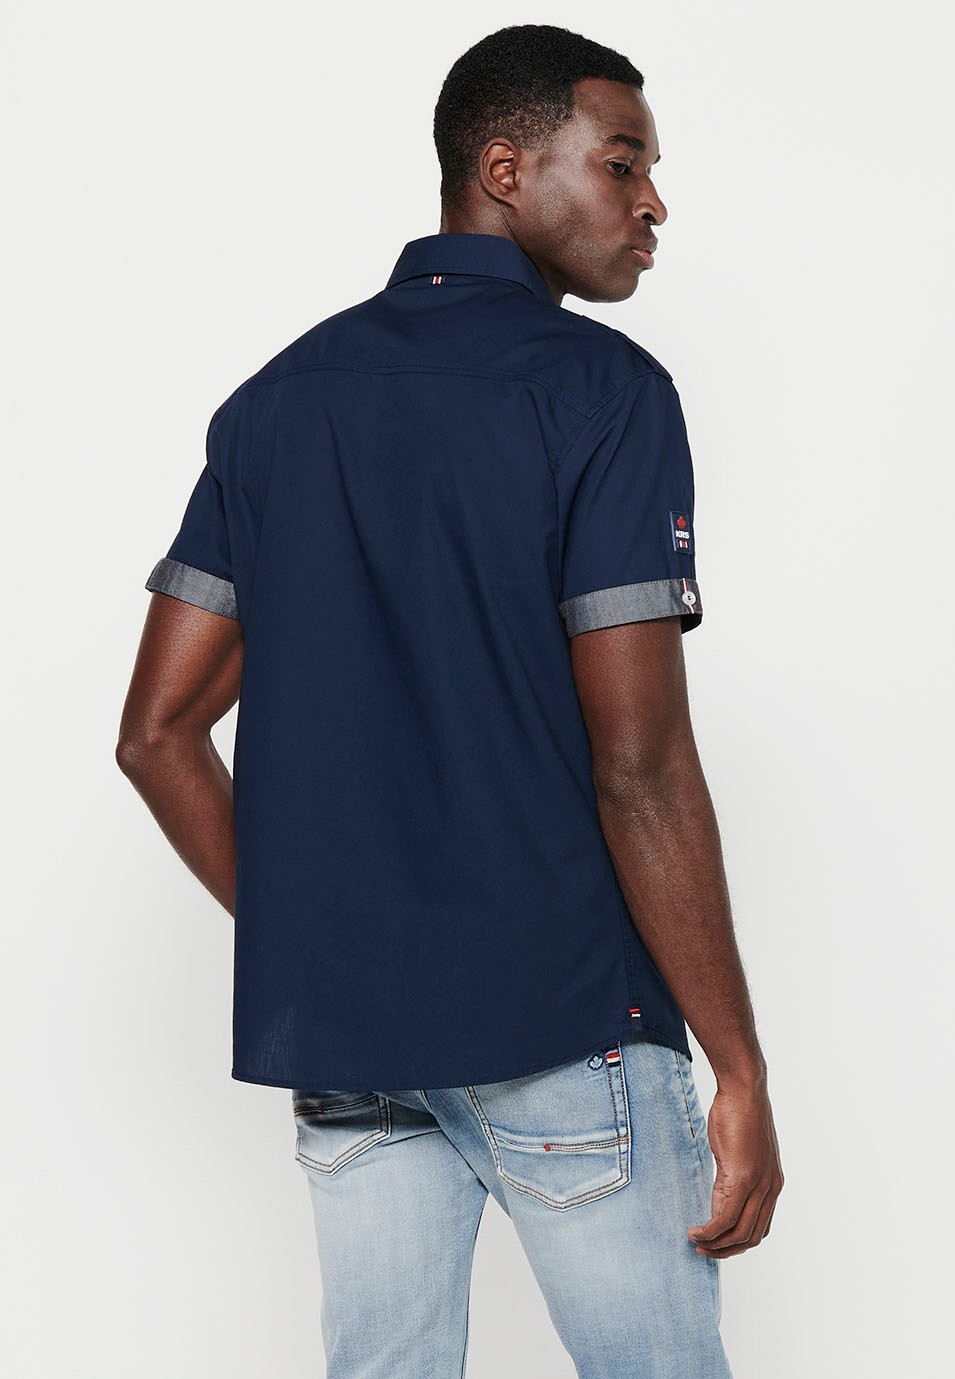 Cotton shirt, short sleeve, shoulder details, navy color for men 7